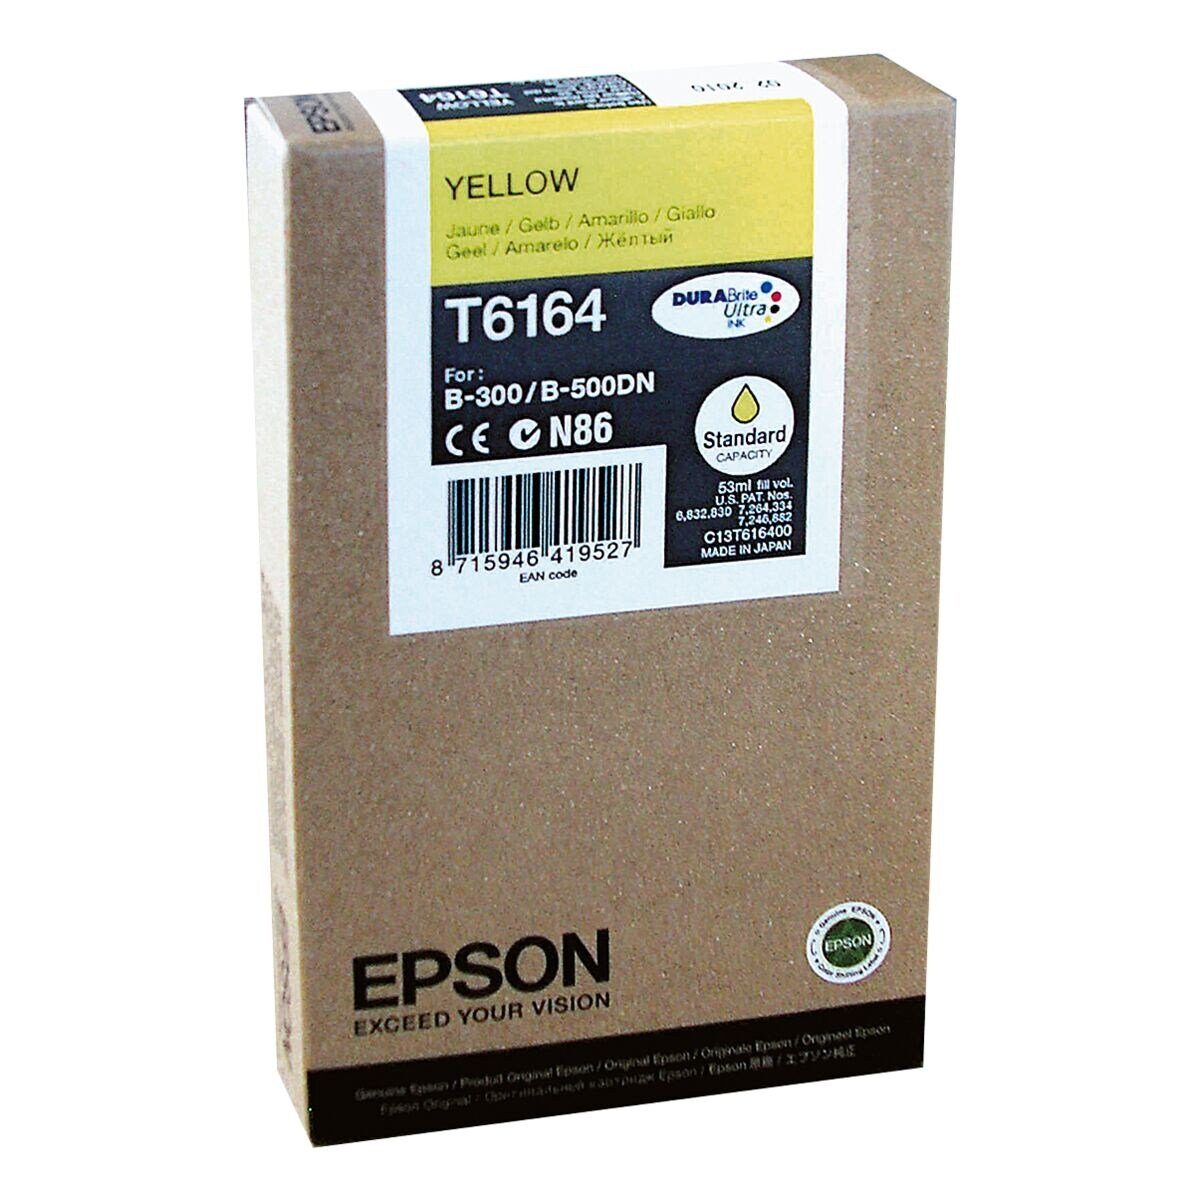 T616400 (Original gelb) Epson Tintenpatrone Druckerpatrone,